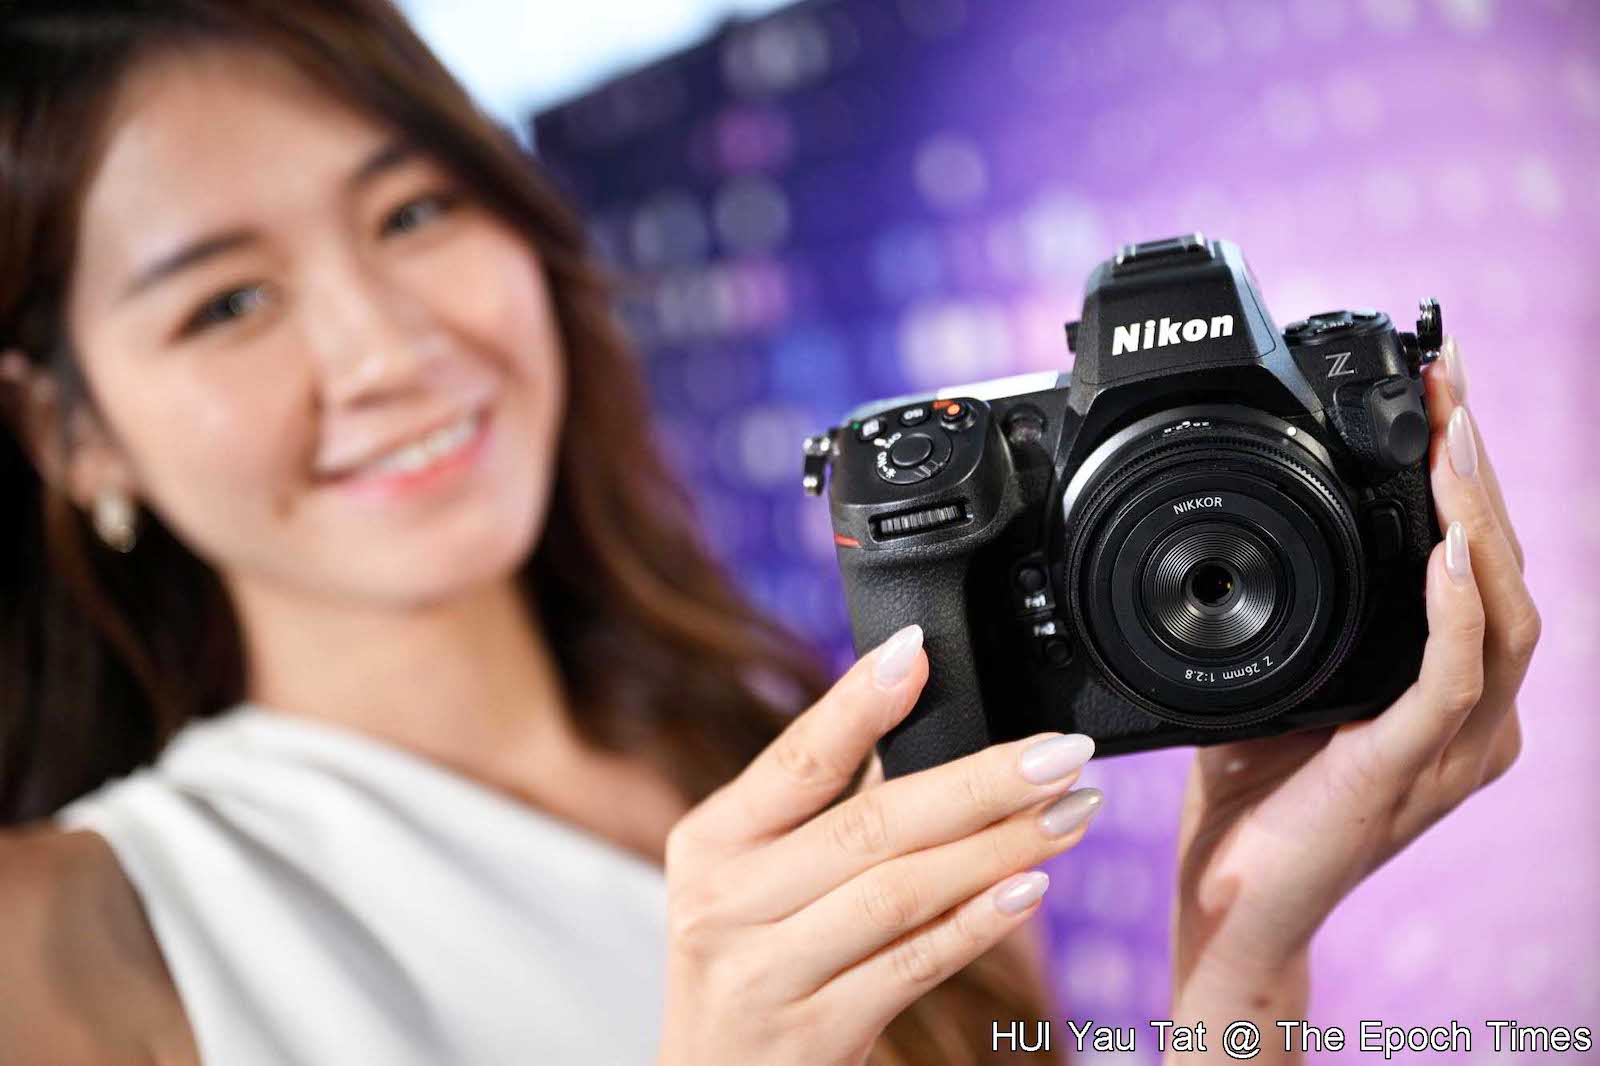 Nikon Z8 Mirrorless Camera 1695 (Z8 Camera Body) B&H Photo Video